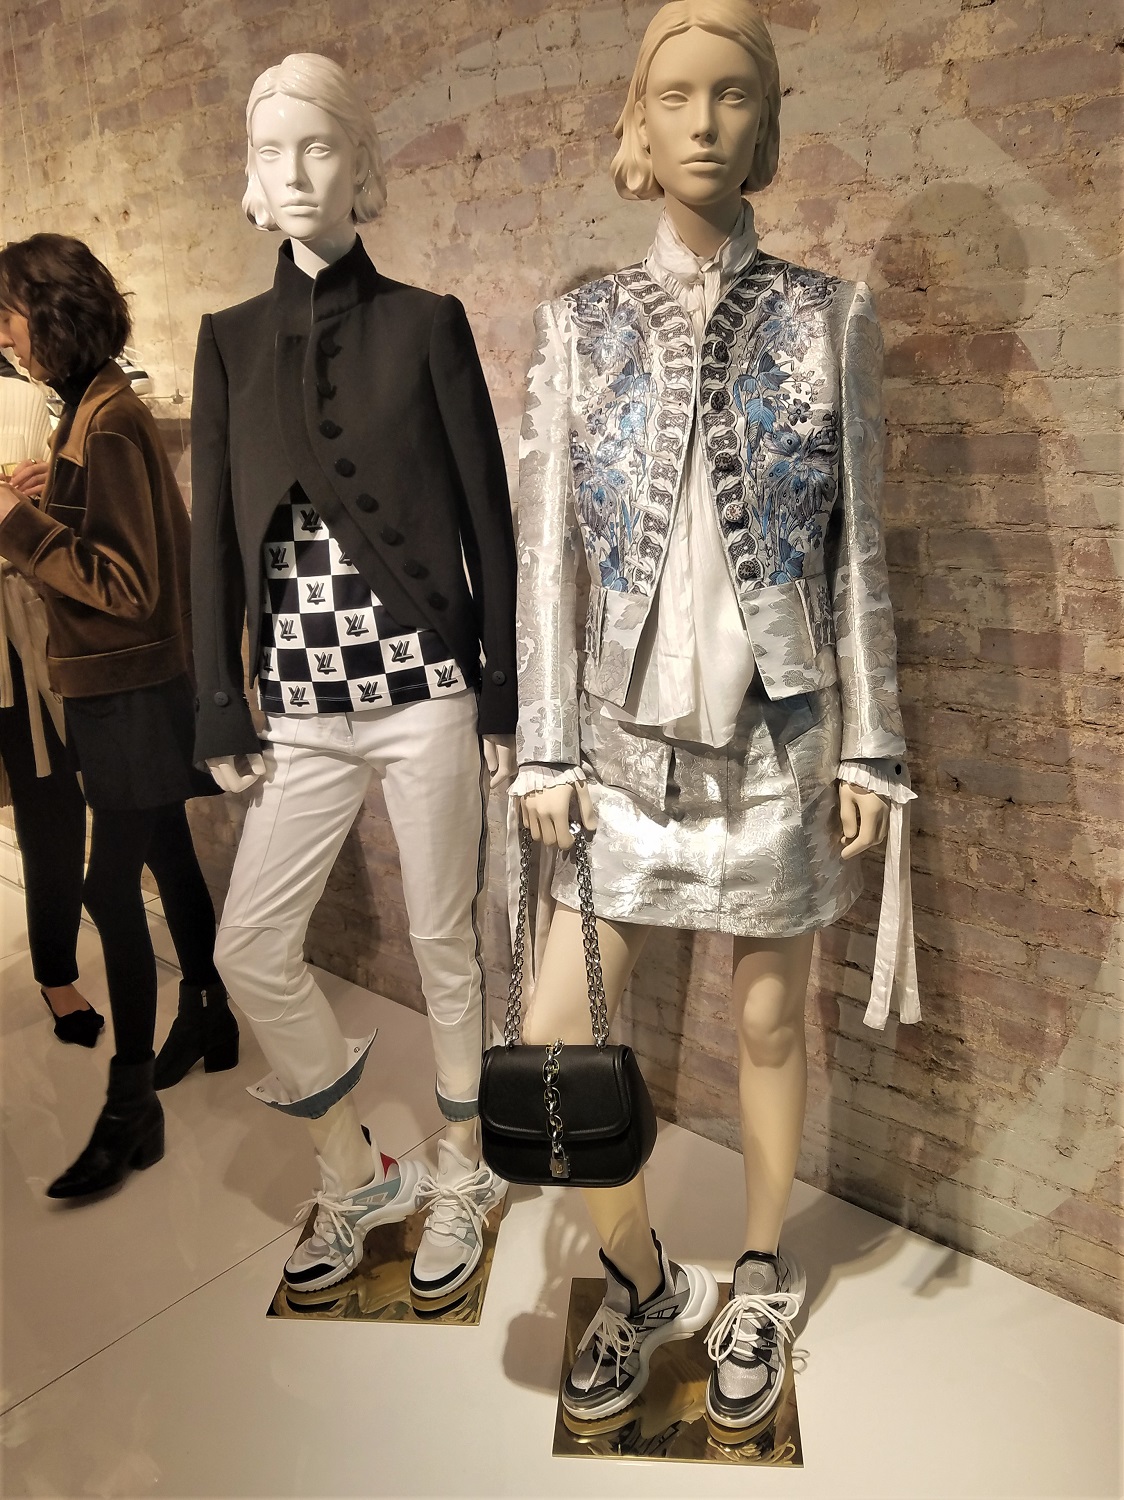 Louis Vuitton Opens a Sneaker Pop-Up in Soho